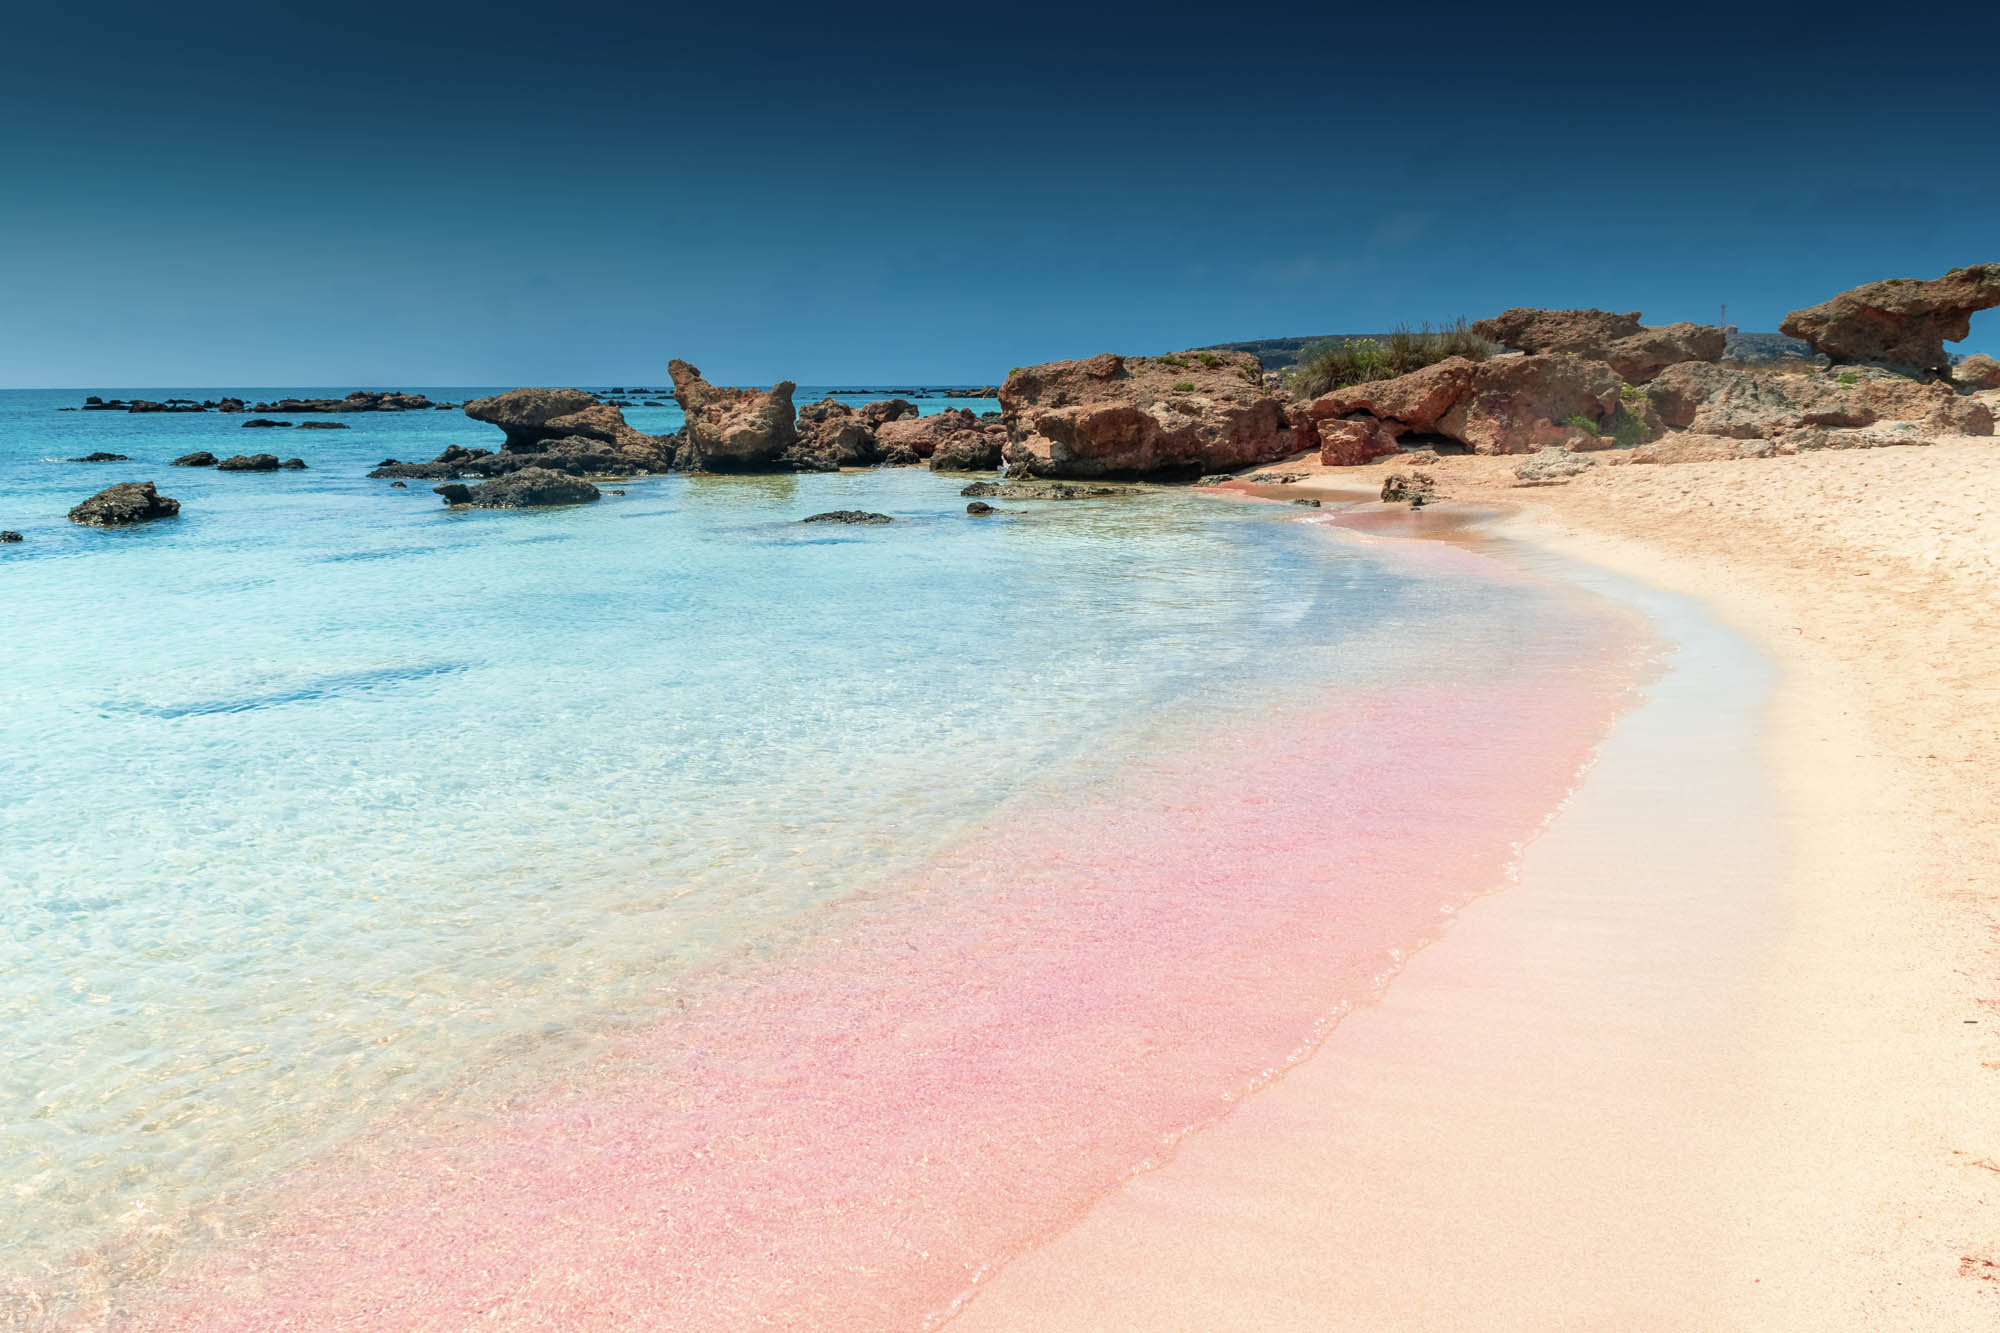 słynna plaża elafonisi na krecie zachodniej, różowy piasek i morze, detal